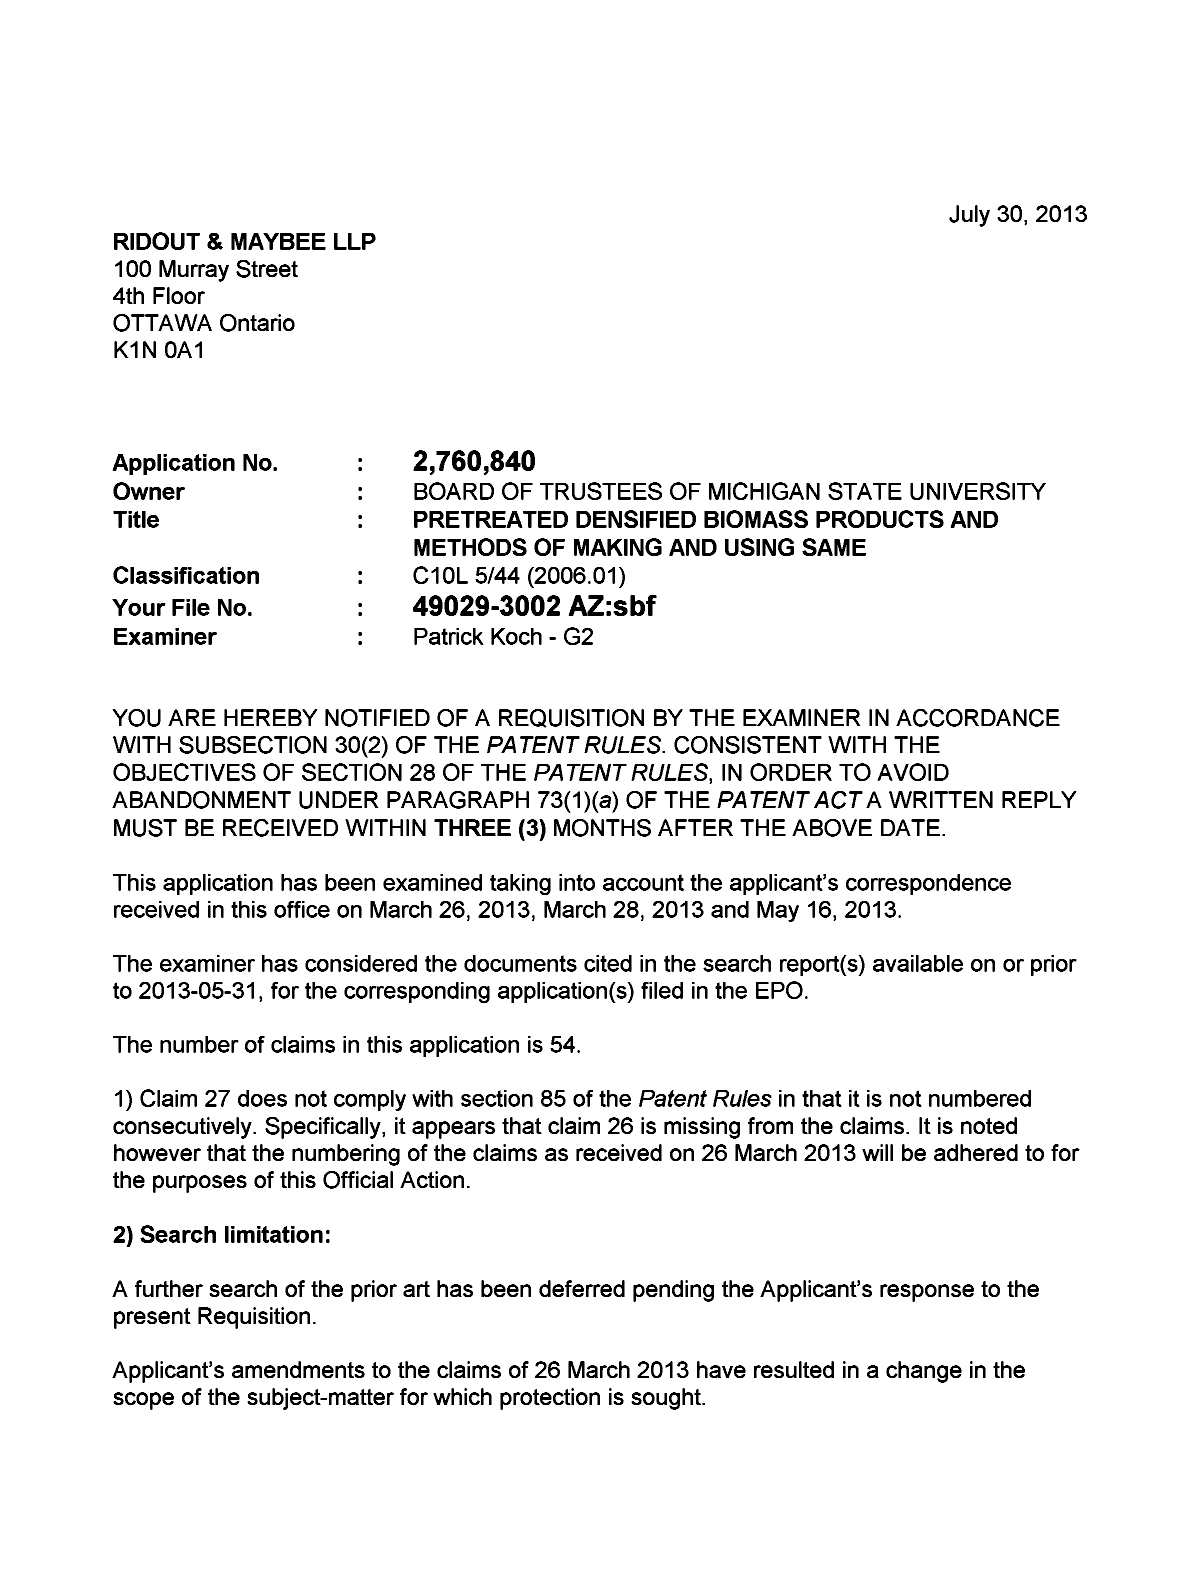 Document de brevet canadien 2760840. Poursuite-Amendment 20121230. Image 1 de 4